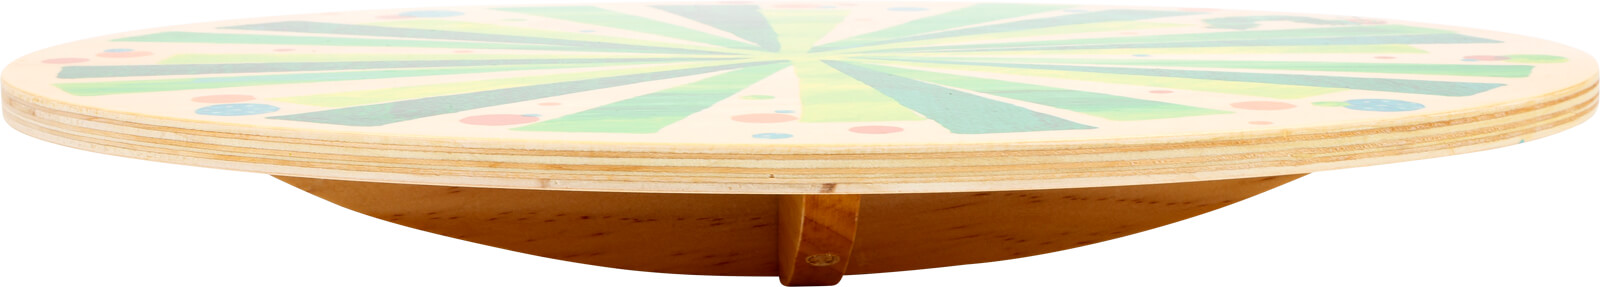 Raupe Nimmersatt Balancierbrett Balanceboard aus Holz 